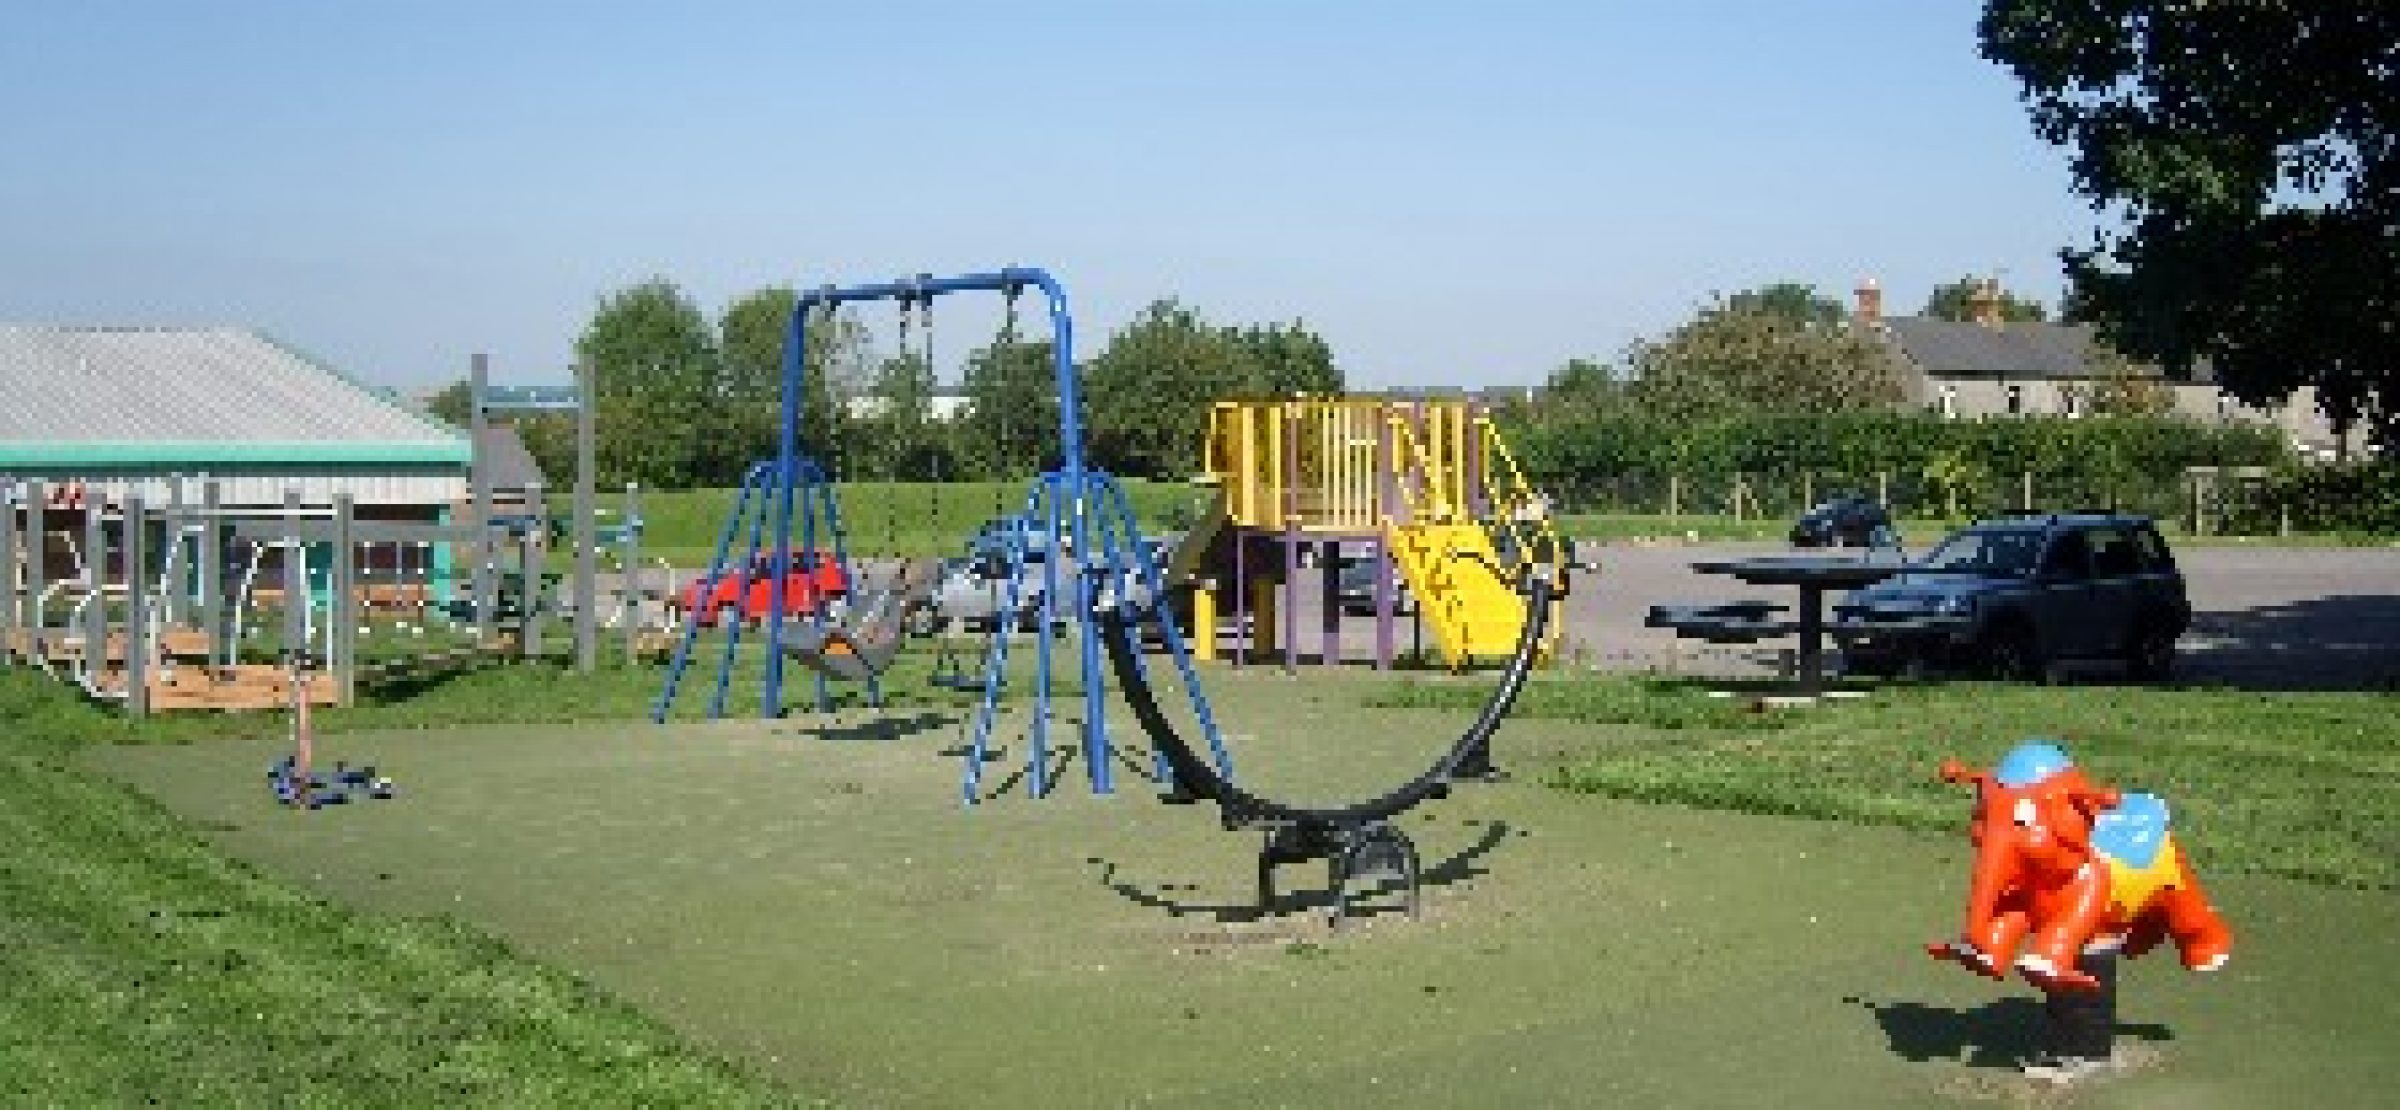 Sandringham Play Area